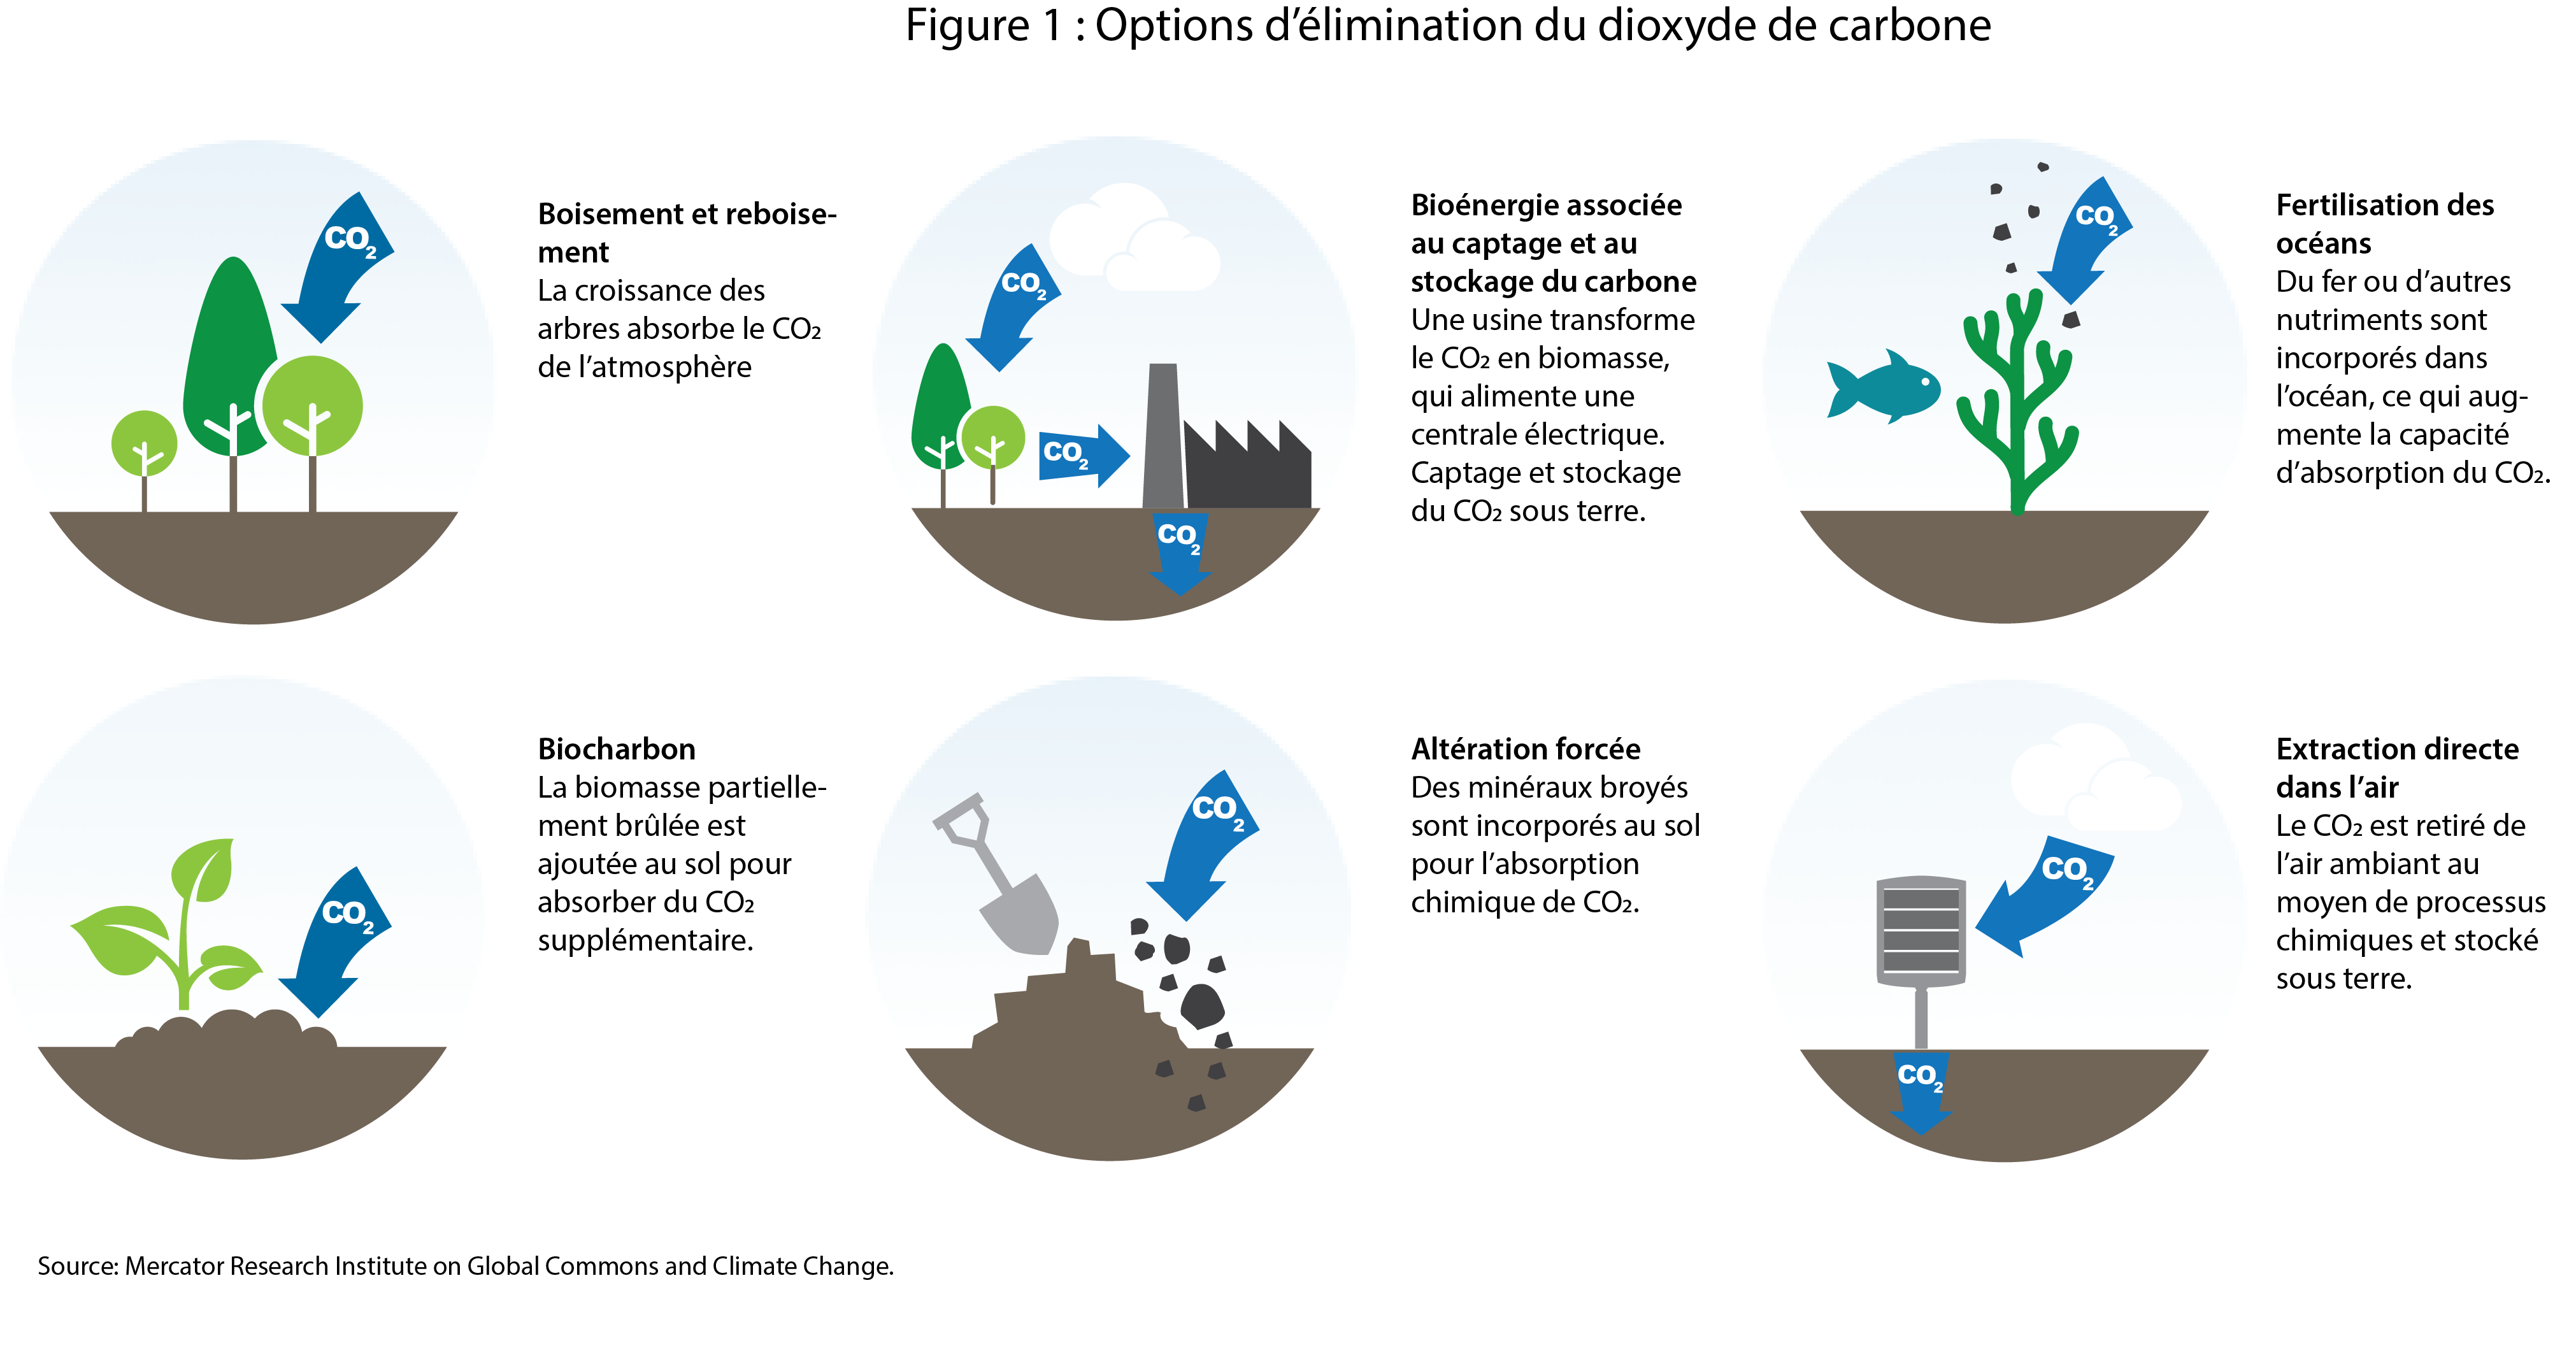 La figure 1 montre les six principales méthodes d’élimination du dioxyde de carbone. Il s’agit du boisement et du reboisement (la croissance des arbres absorbe le CO2 de l’atmosphère), de la production de bioénergie au moyen du captage et du stockage du carbone, de la fertilisation des océans (des nutriments sont ajoutés à l’océan pour l’aider à absorber le CO2), du biocharbon (la biomasse partiellement brûlée est ajoutée au sol pour une absorption supplémentaire de CO2), de l’altération forcée (des minéraux sont broyés et incorporés dans le sol pour absorber le CO2) et de l’extraction directe dans l’air (le CO2 est retiré de l’air ambiant au moyen de processus chimiques). .